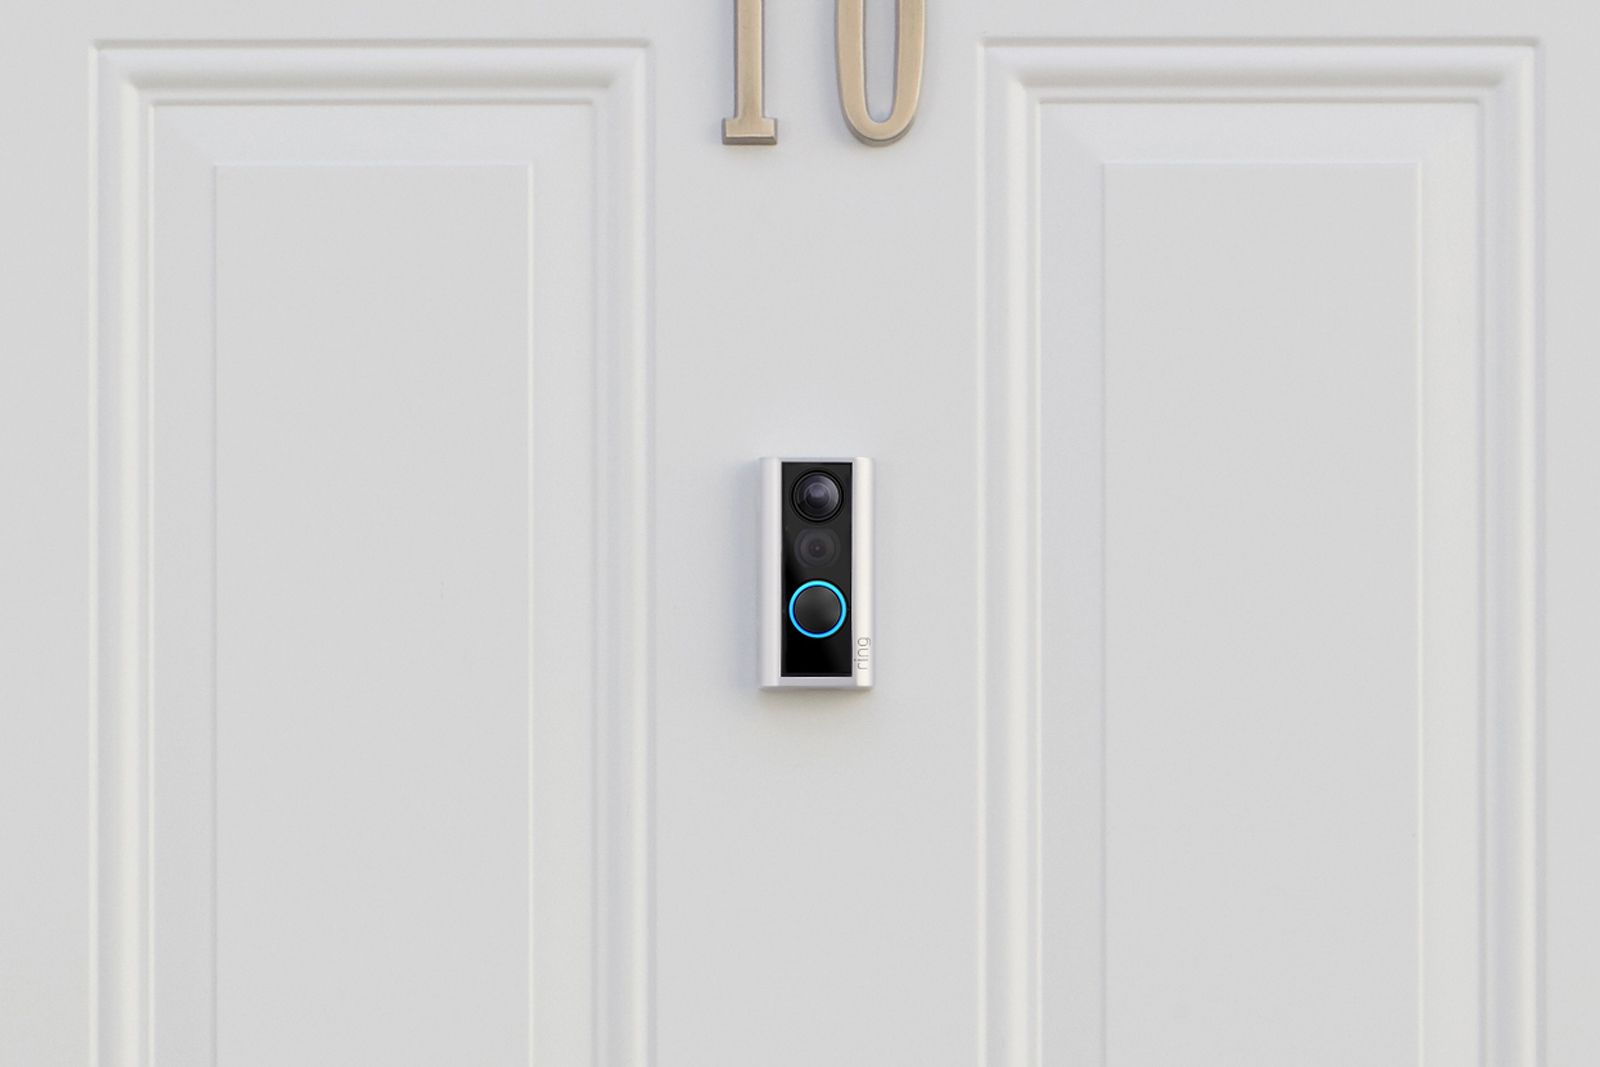 Nest Hello Vs Ring Video Doorbell Vs Doorbell 2 Vs Doorbell Pro Whats The Difference image 6